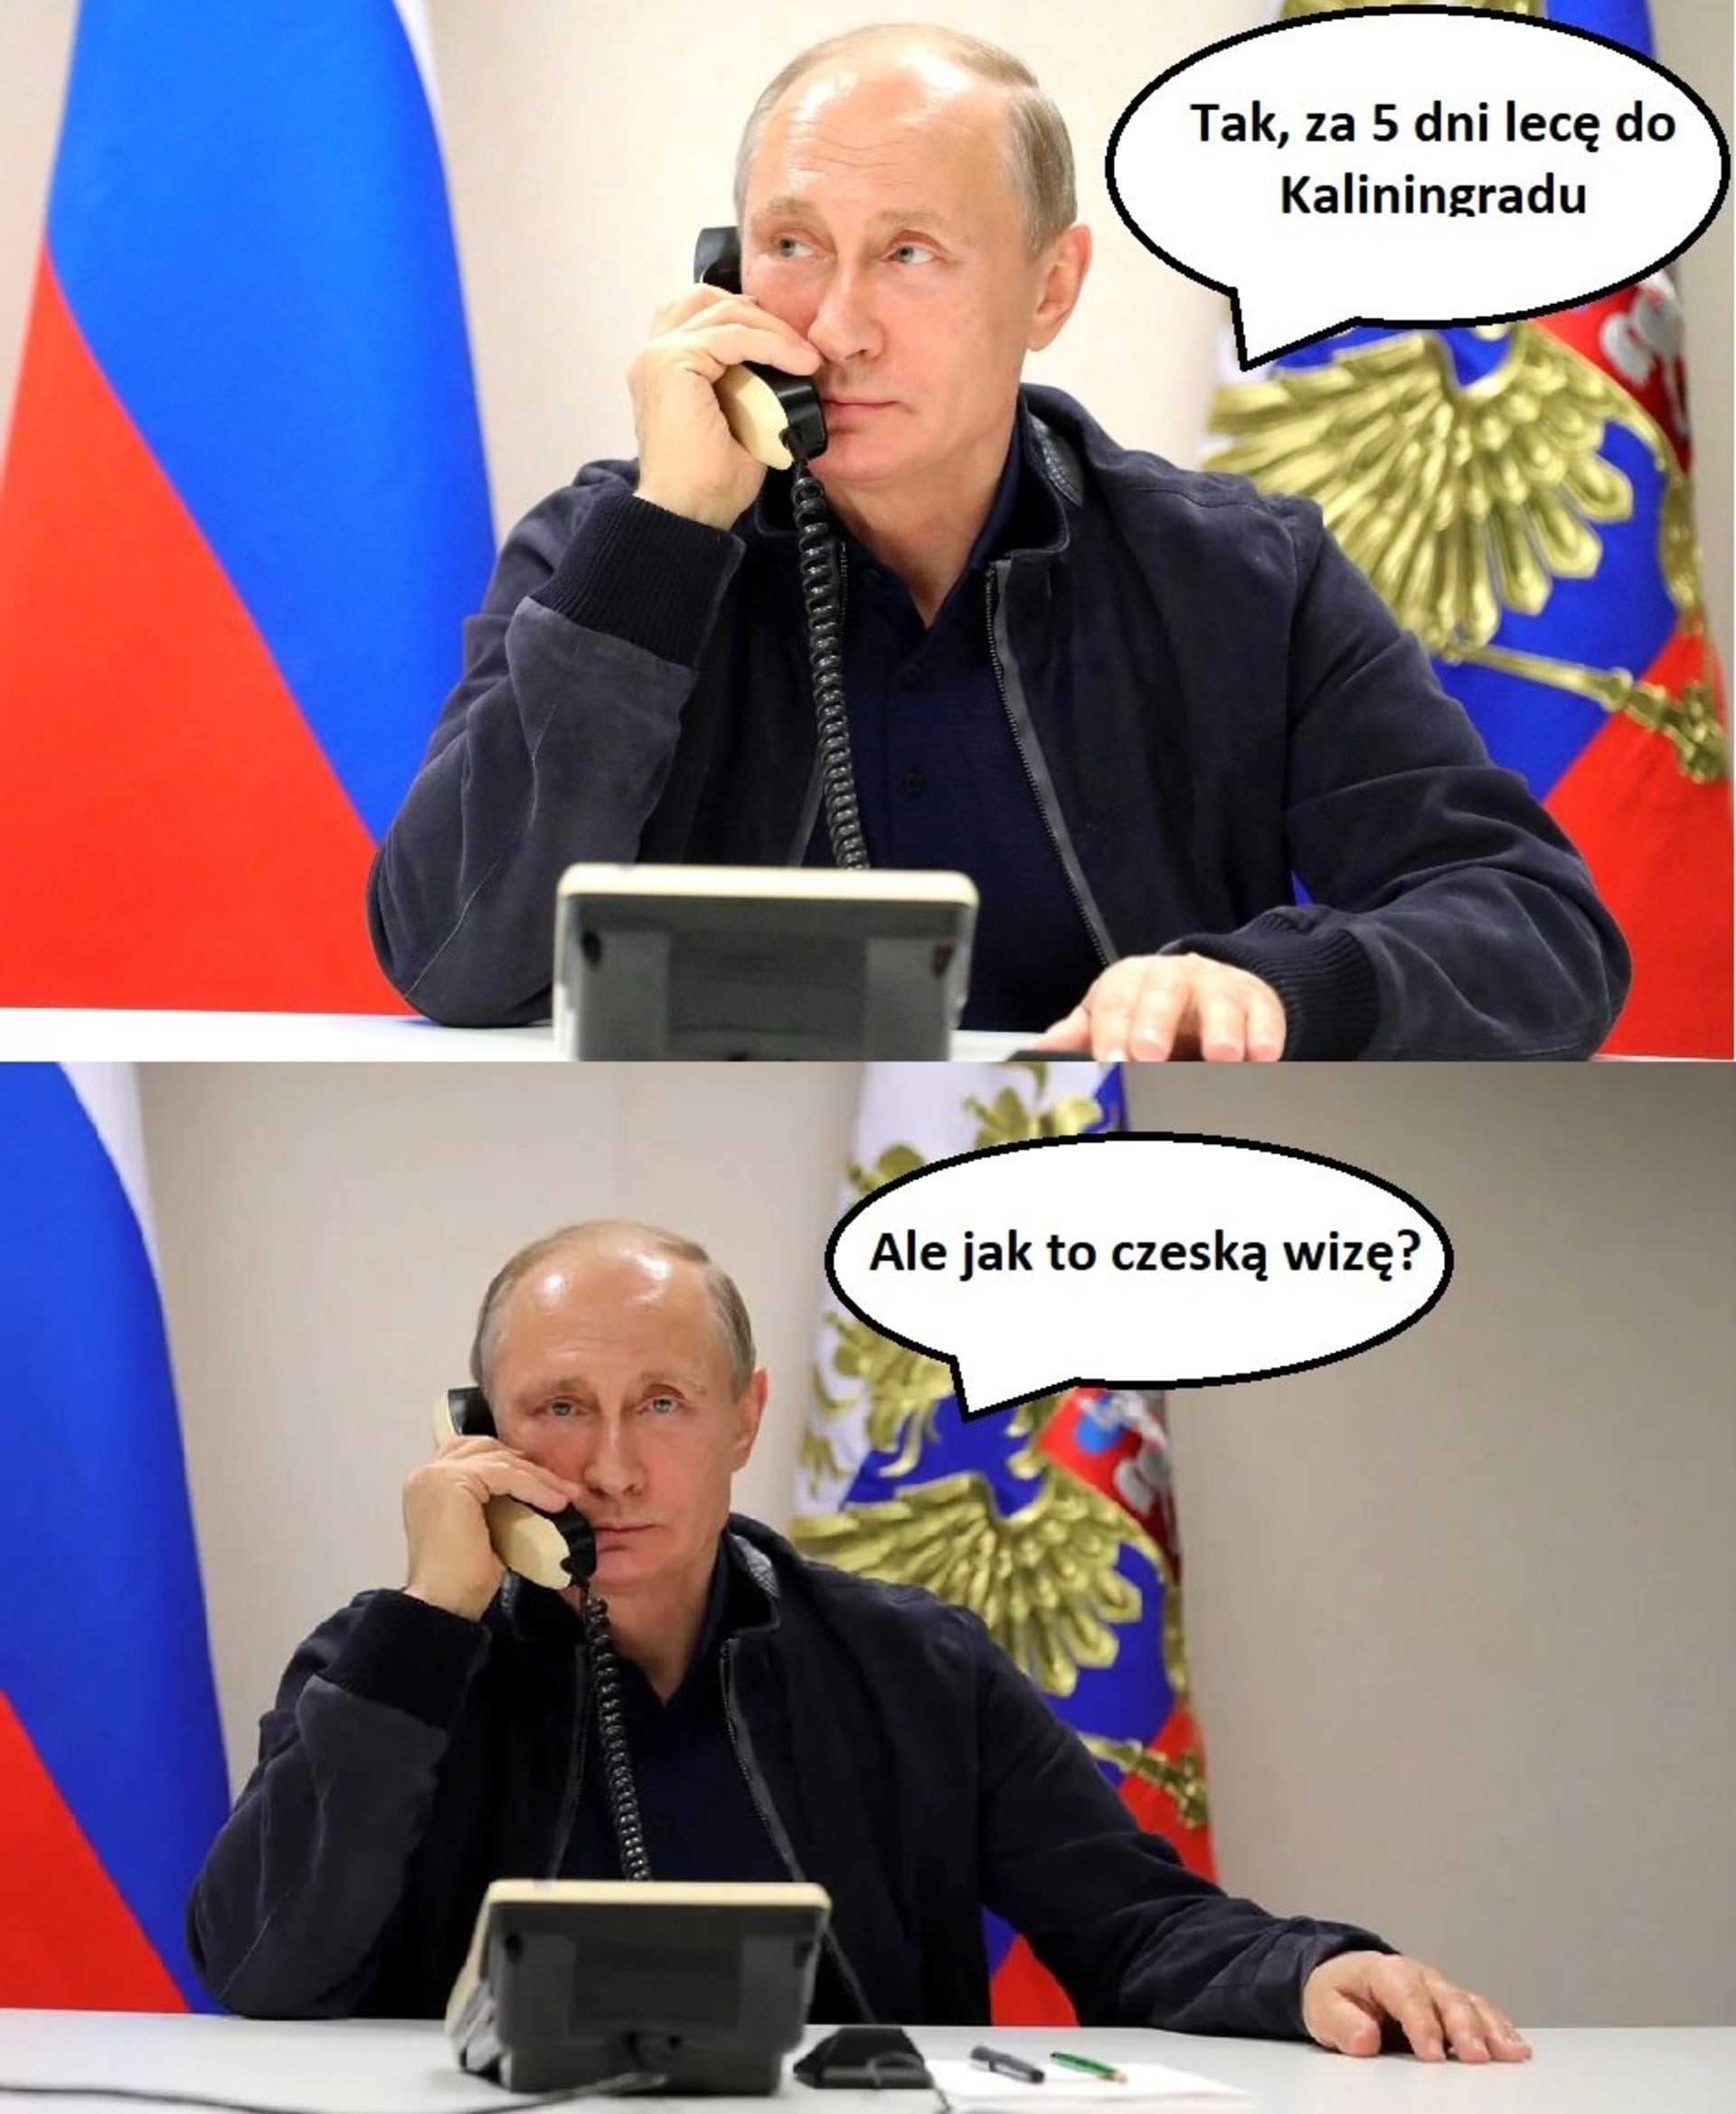 Zahanbit se s vtipy nenechají ani Poláci. „Tak za pět dní letím do Kaliningradu,“ říká na první fotce ruský prezident Vladimir Putin. Na druhé fotografii přichází jeho šok, když se dozvídá, že bude potřebovat české vízum.